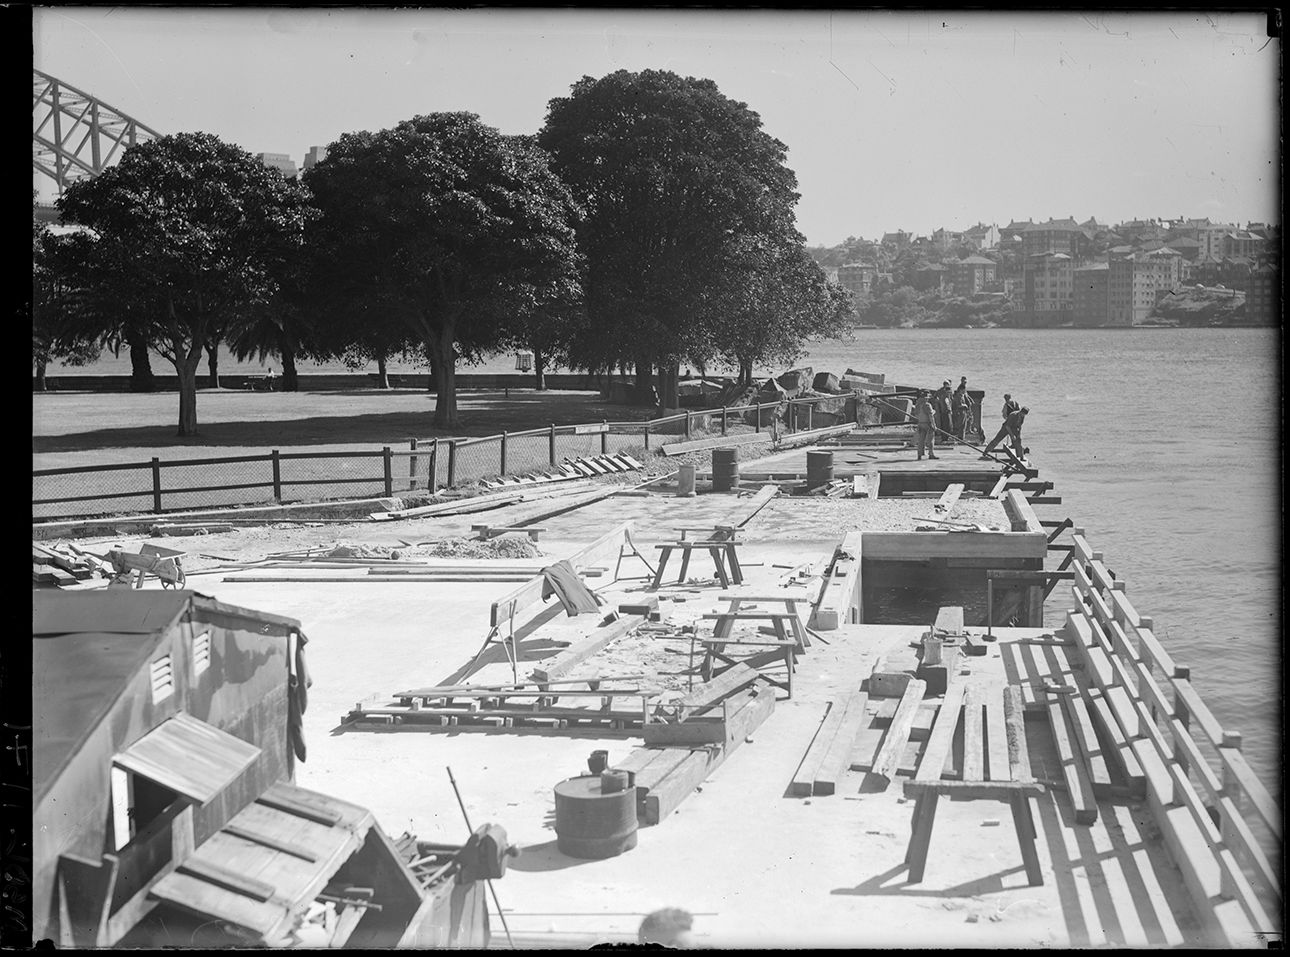 Construction work at Bennelong Point, World War 2 era